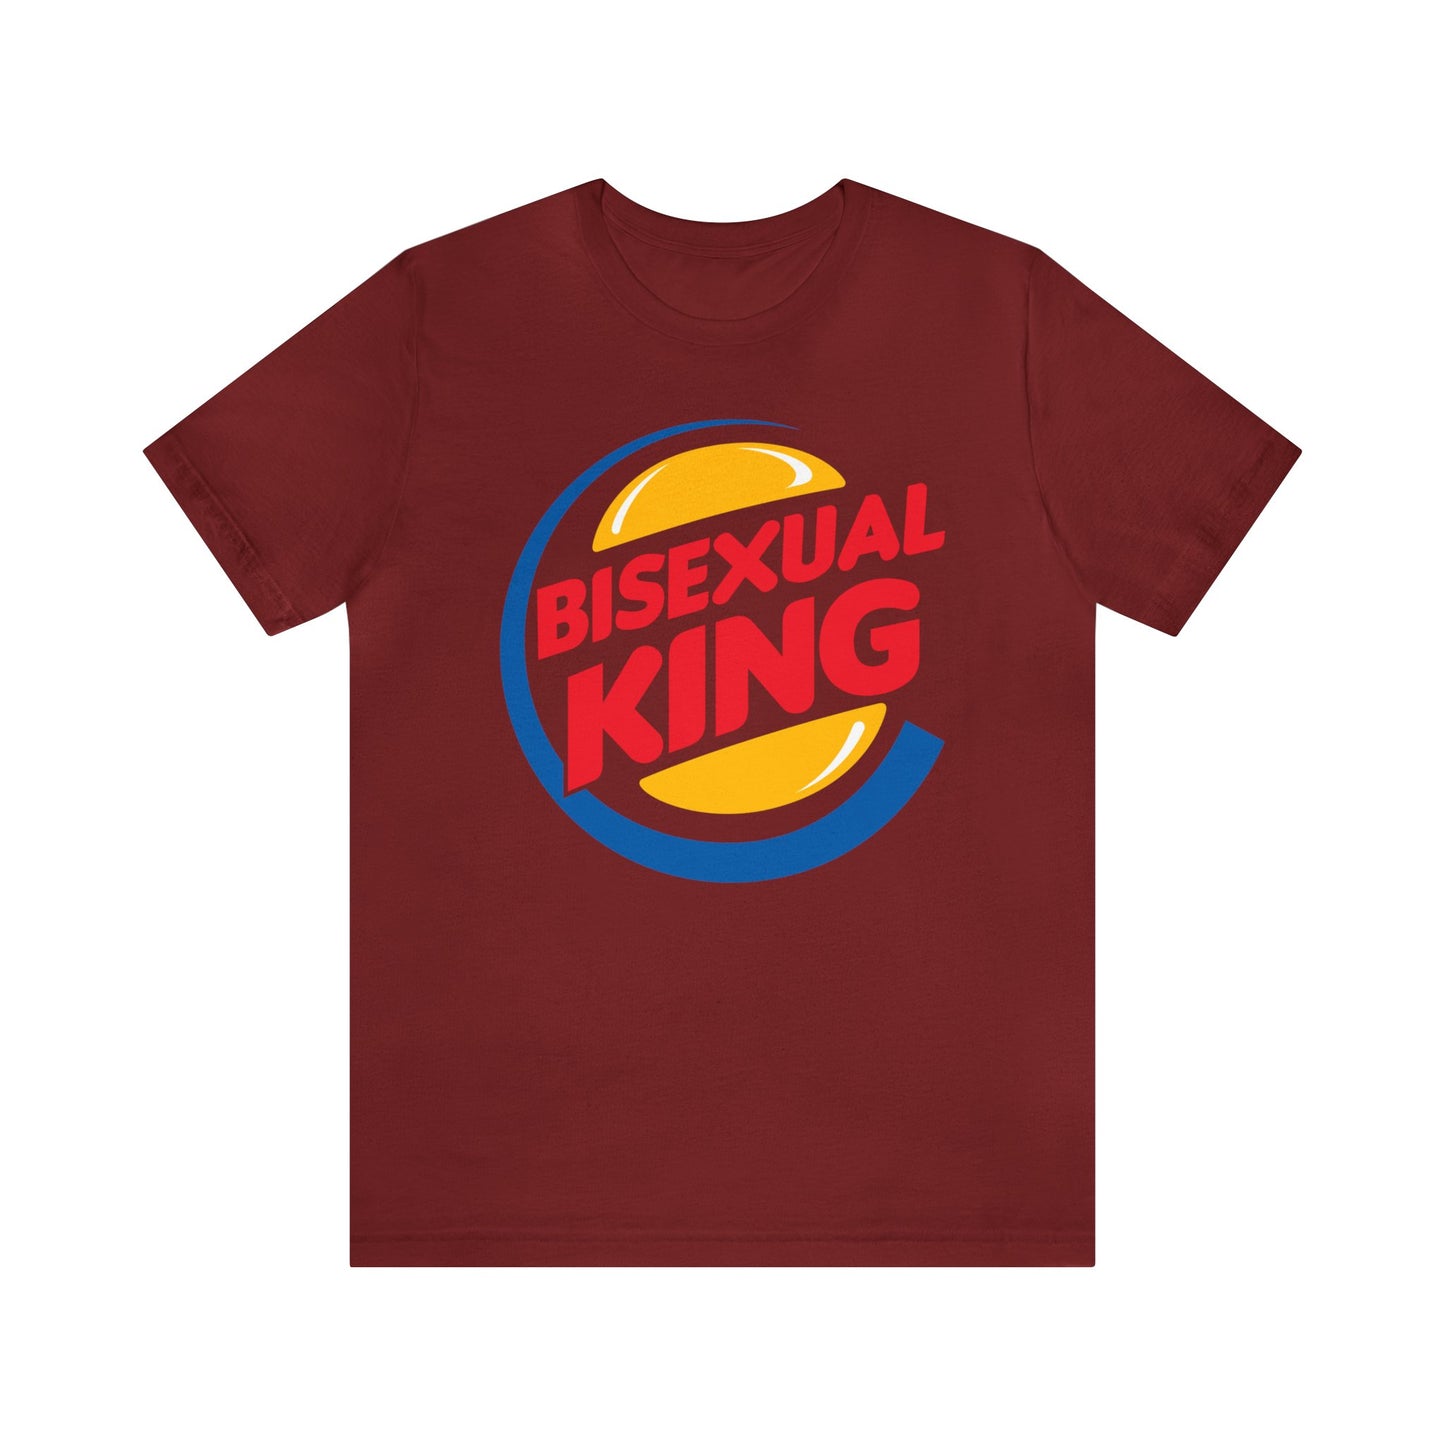 Bisexual King Unisex t-shirt